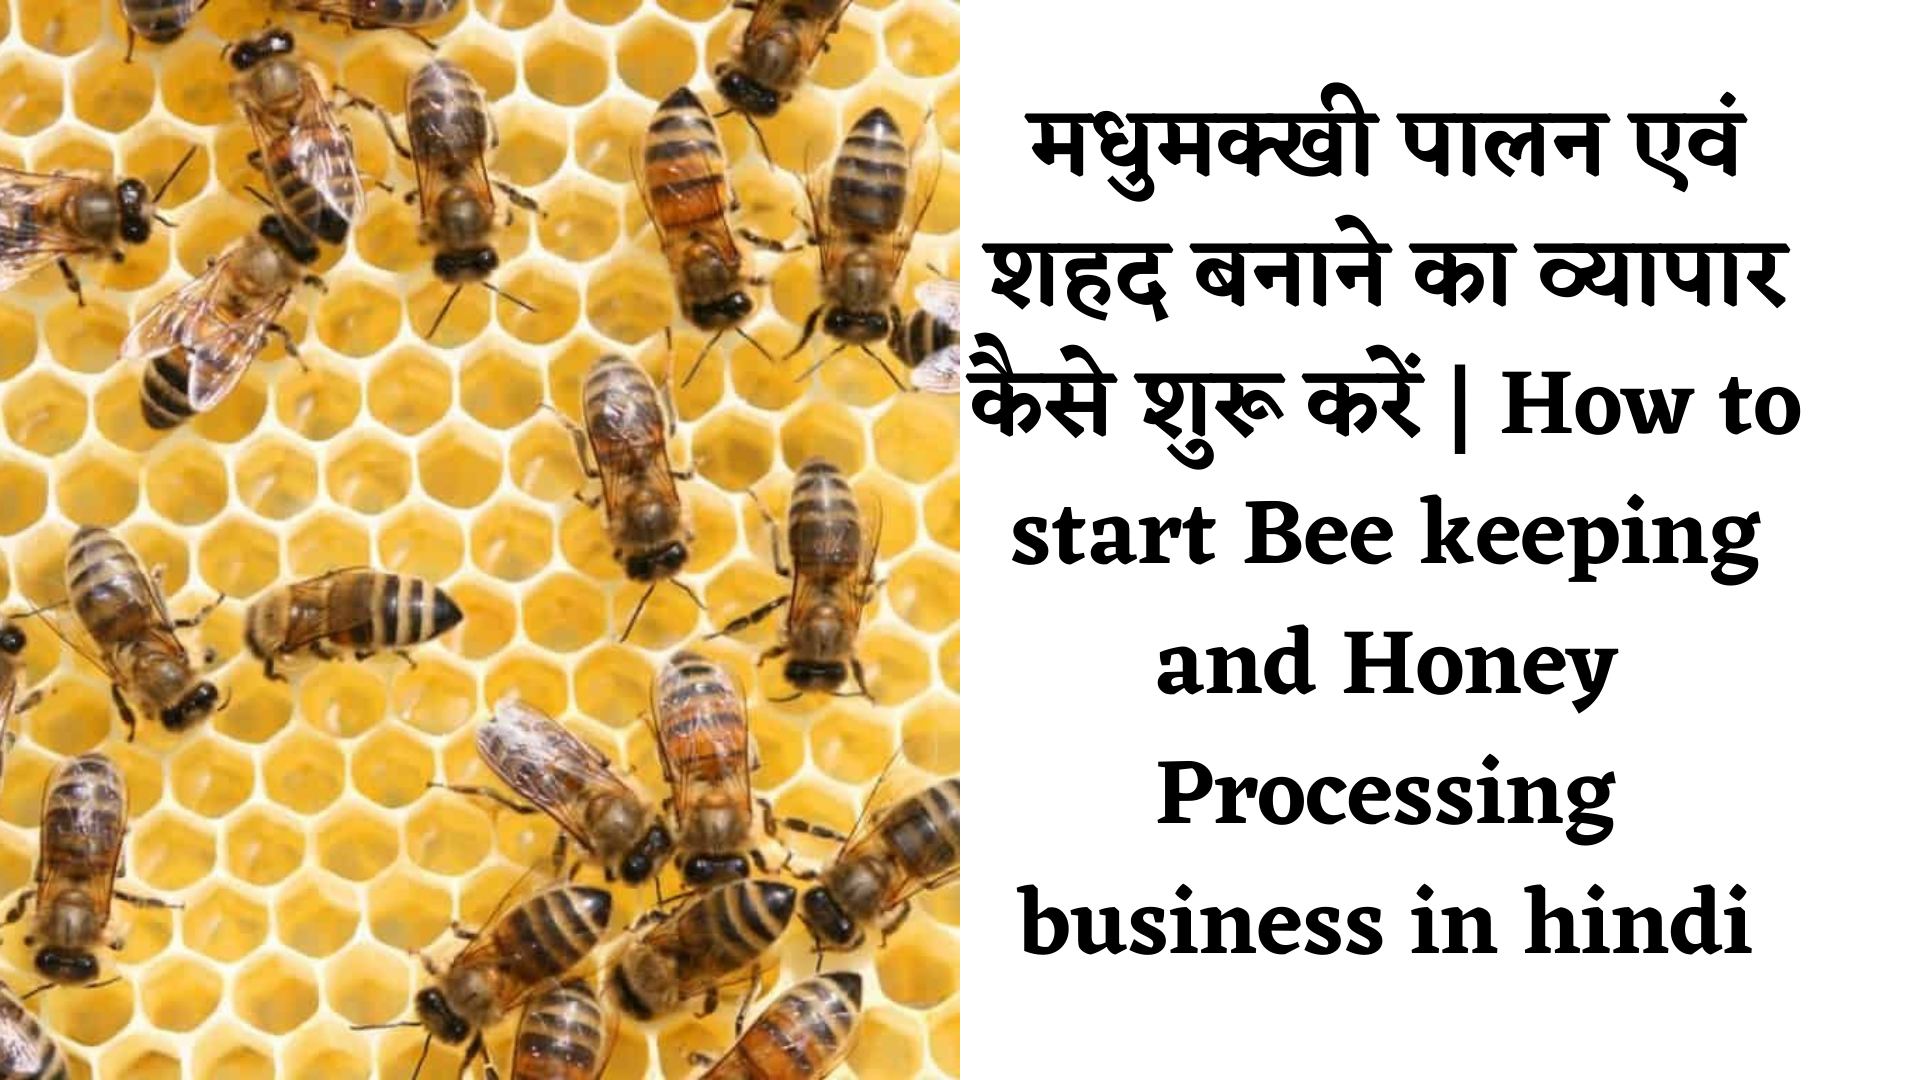 Honeybee keeping business